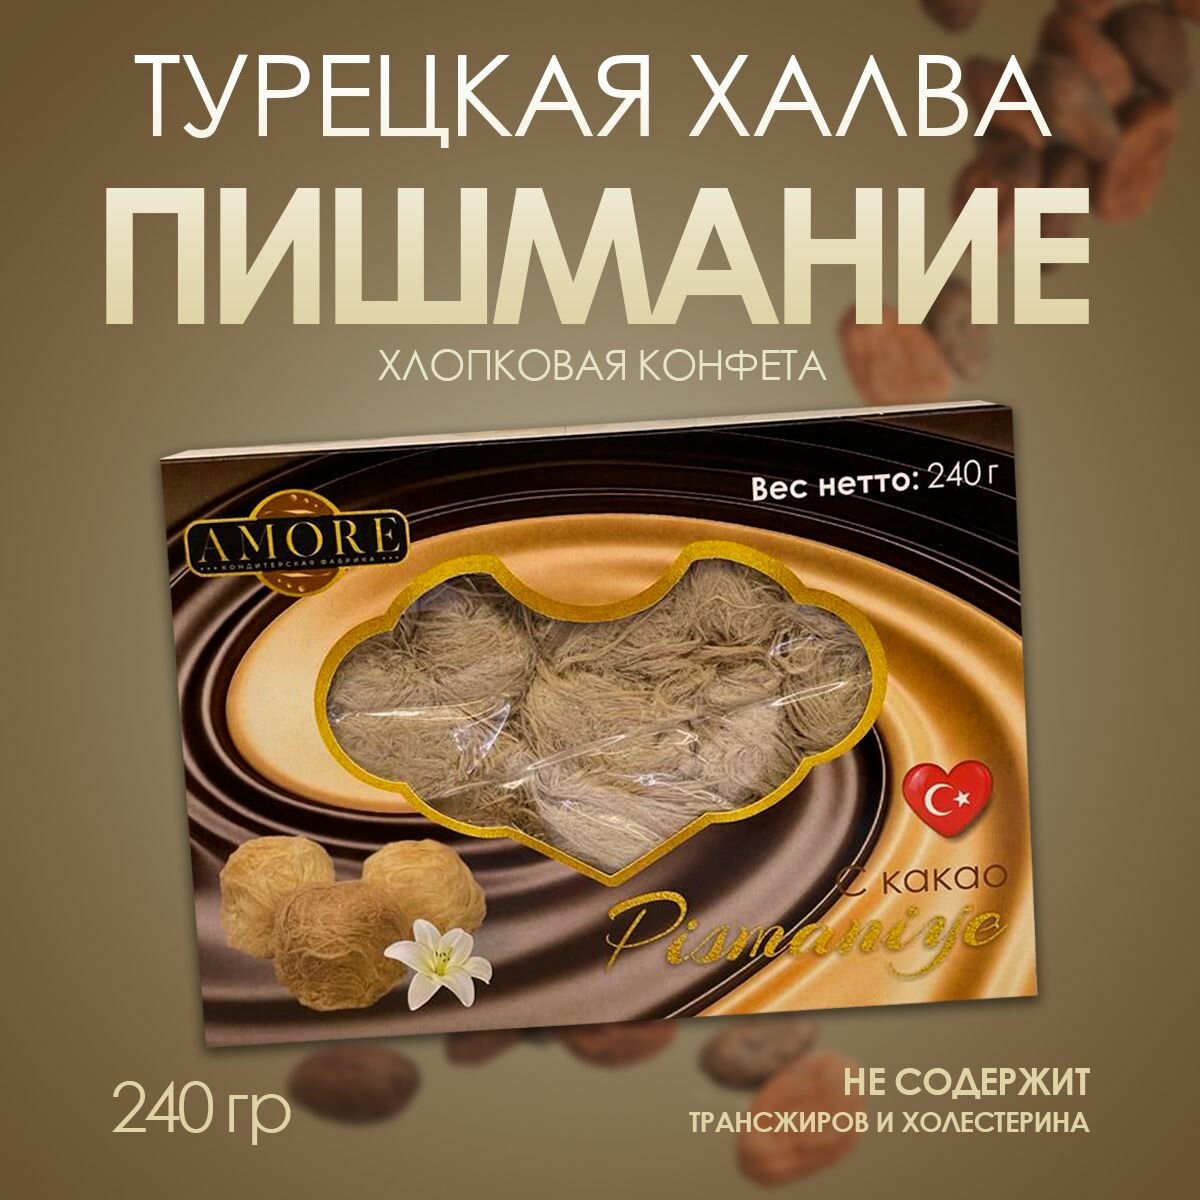 Халва Турецкая пишмание с какао